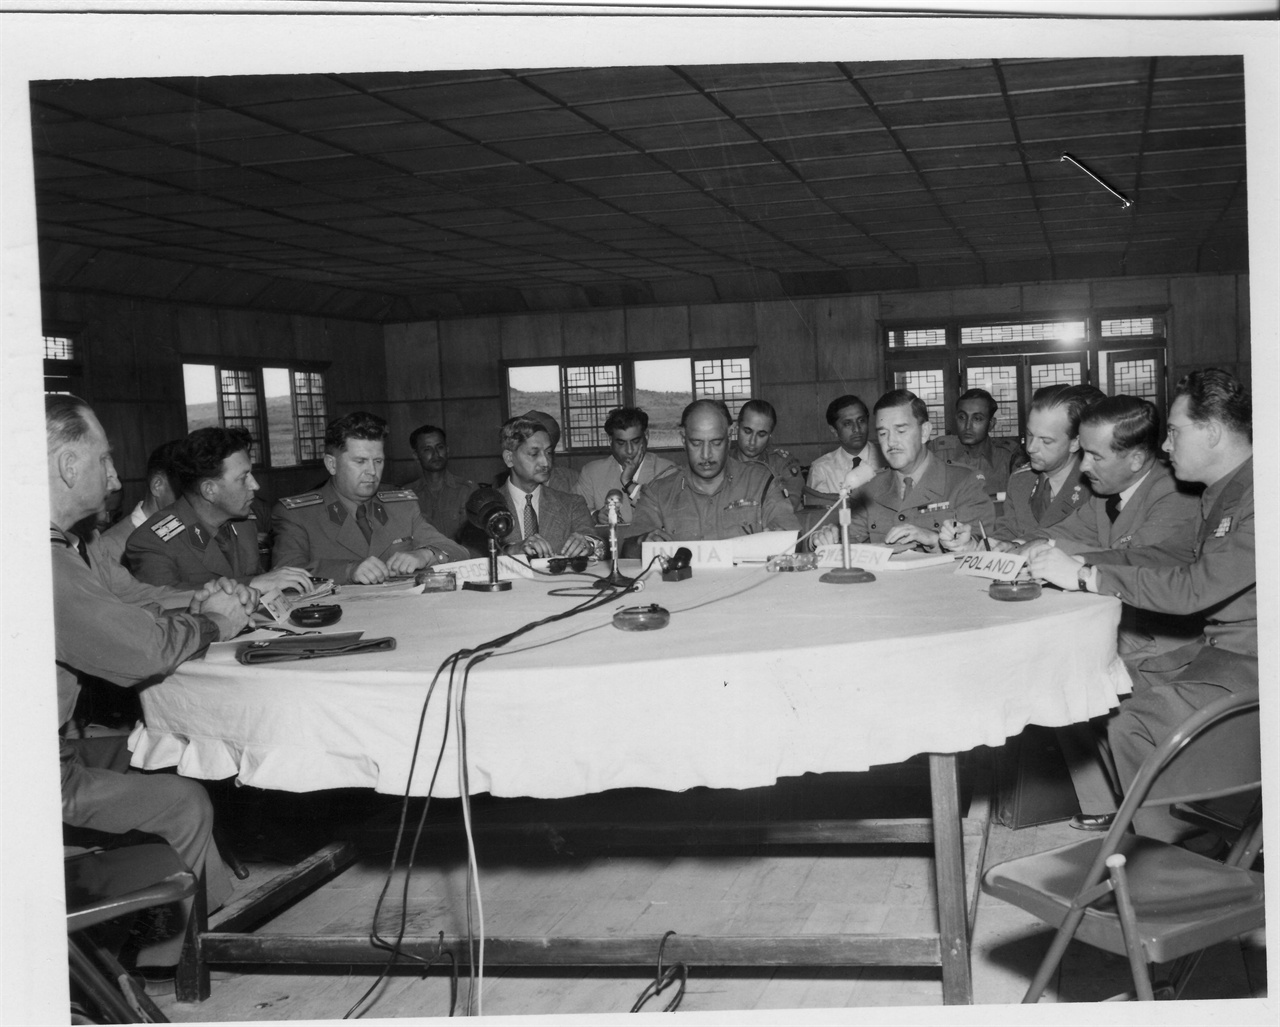  1953. 9. 21. 판문점 정전회담장에서 중립국감시단들이 원탁회의를 하고 있다(체코, 스웨덴, 폴란드, 스위스 대표 등).